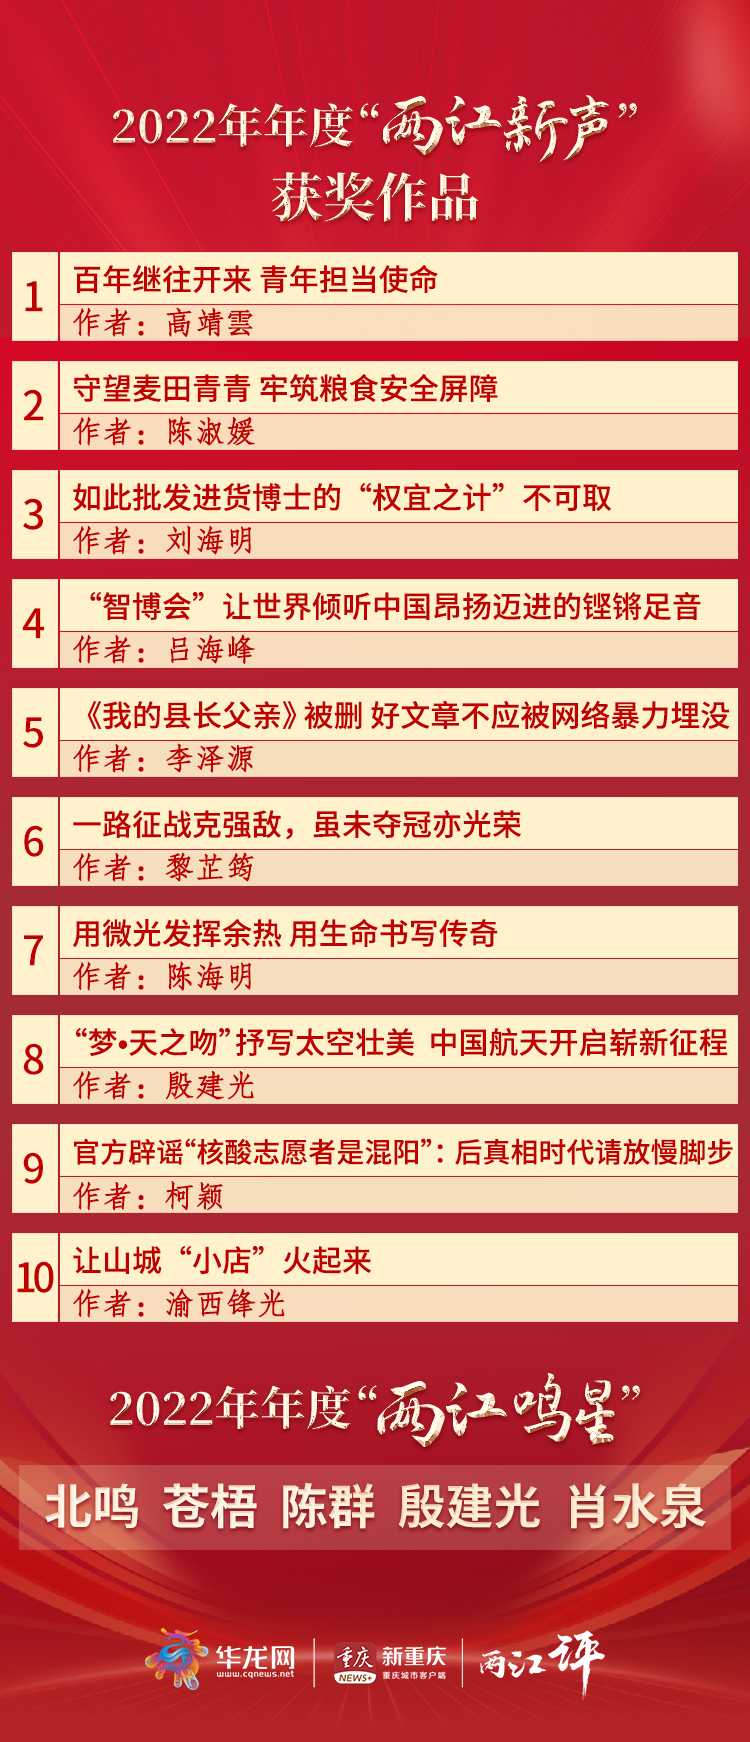 2022年度两江评“两江新声”“两江鸣星”名单。